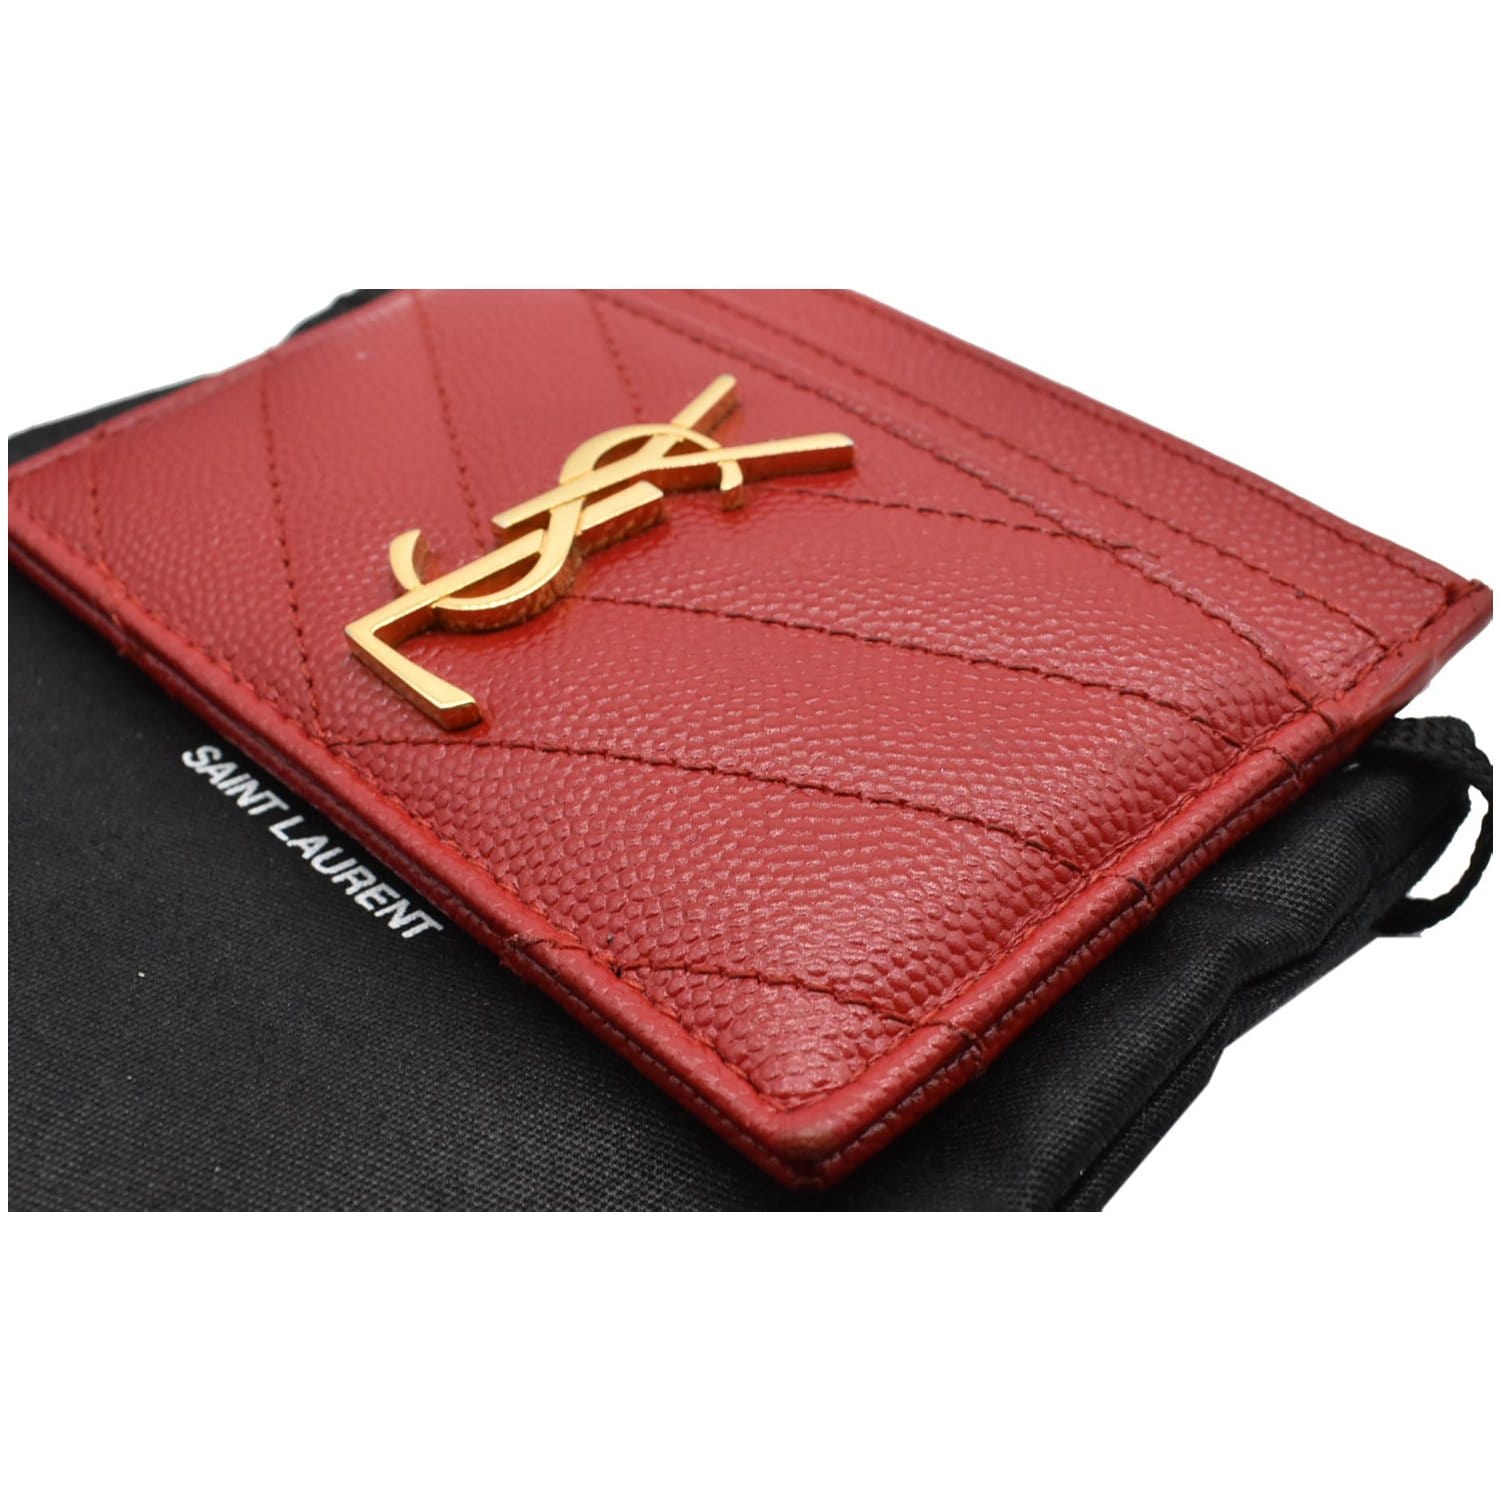 SAINT LAURENT | Shiny leather card case